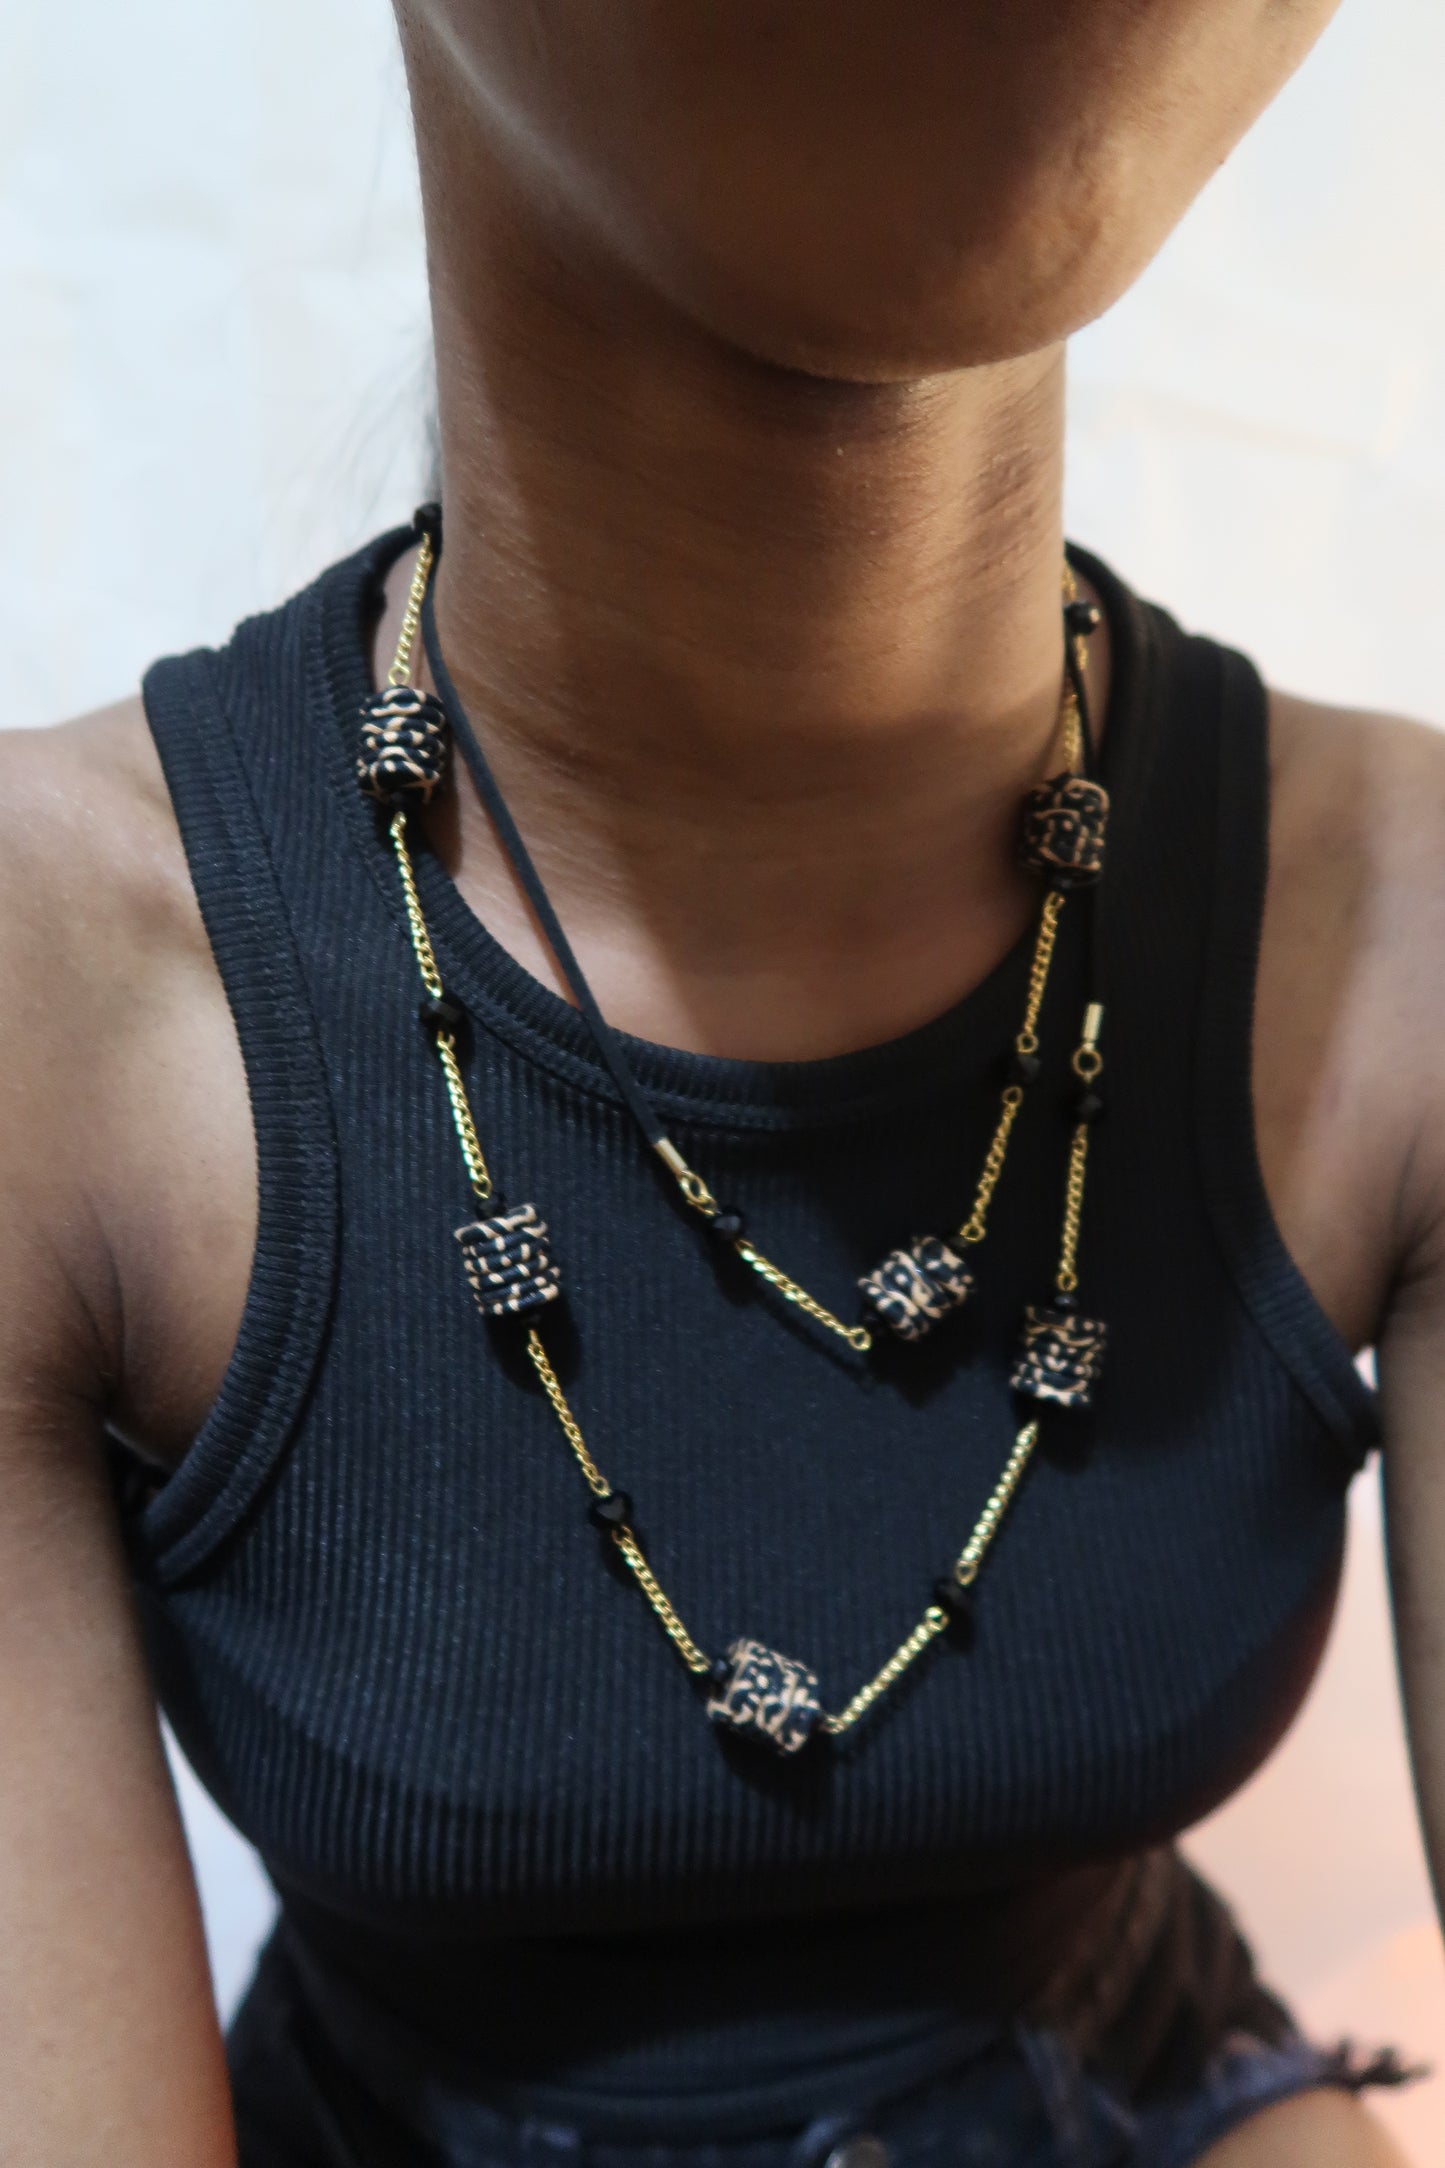 Unique black and gold necklace